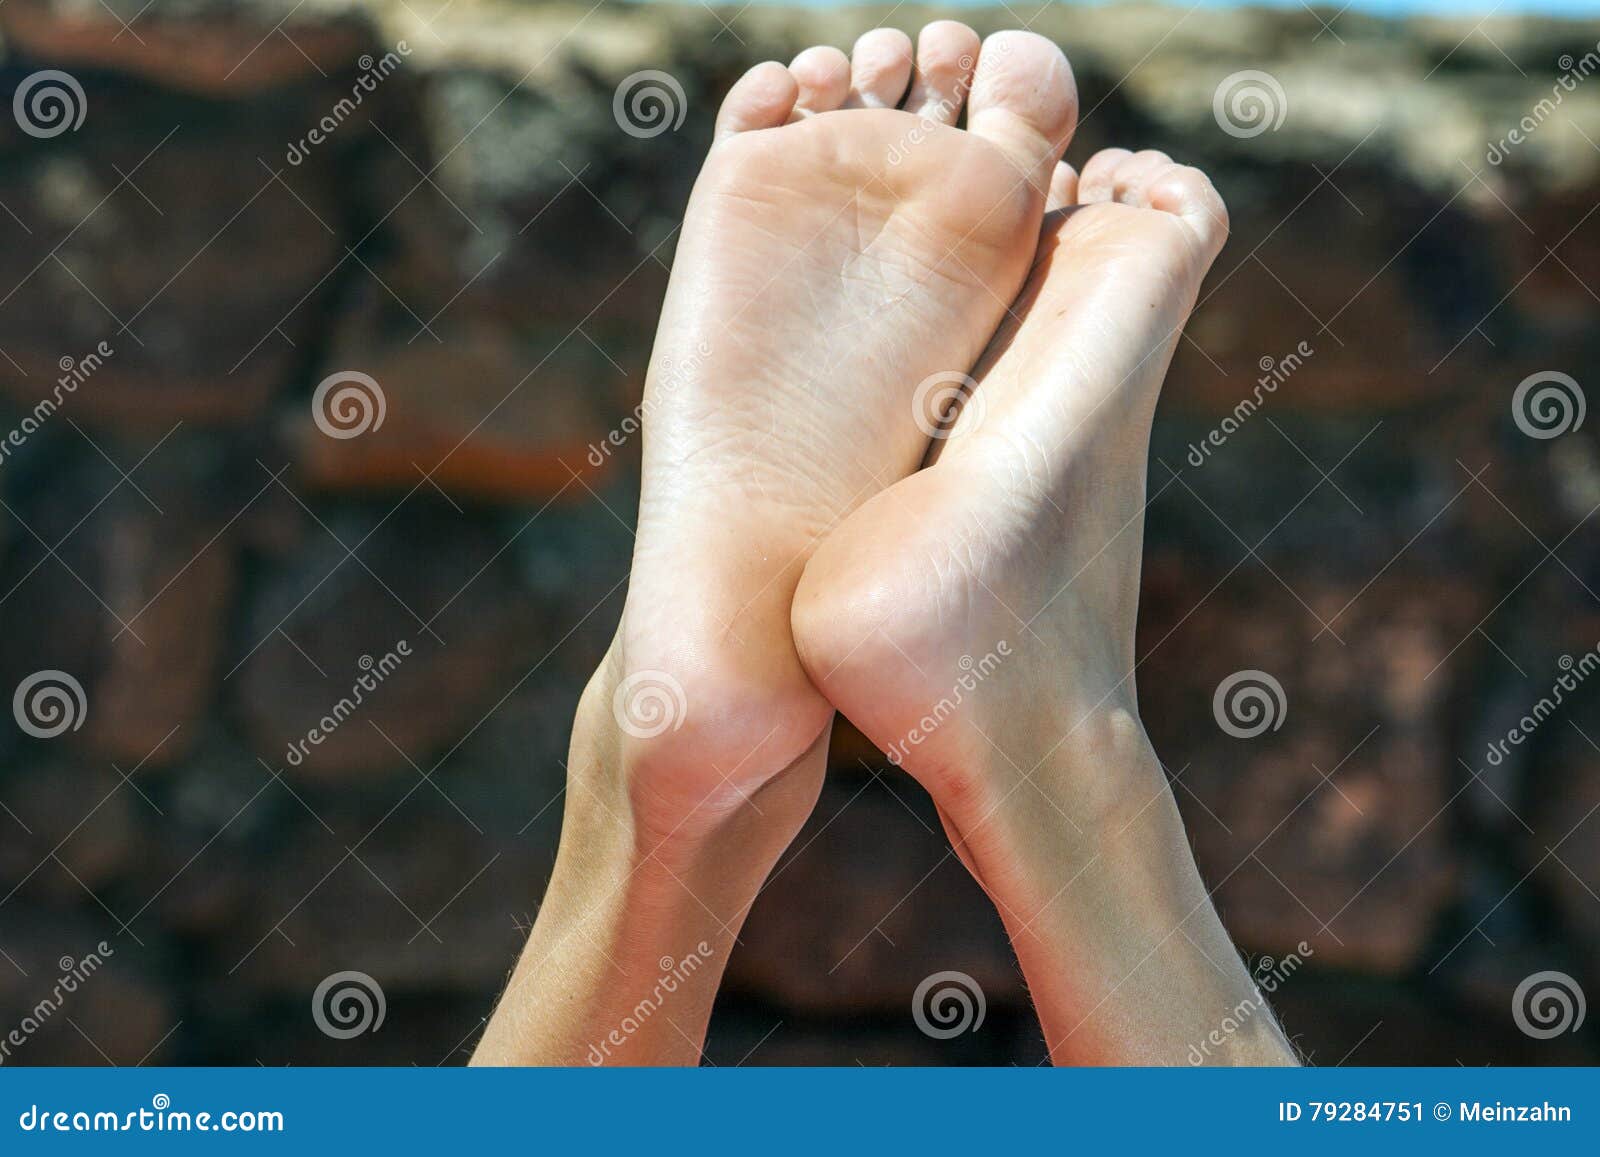 超过 100 张关于“男孩脚”和“脚”的免费图片 - Pixabay